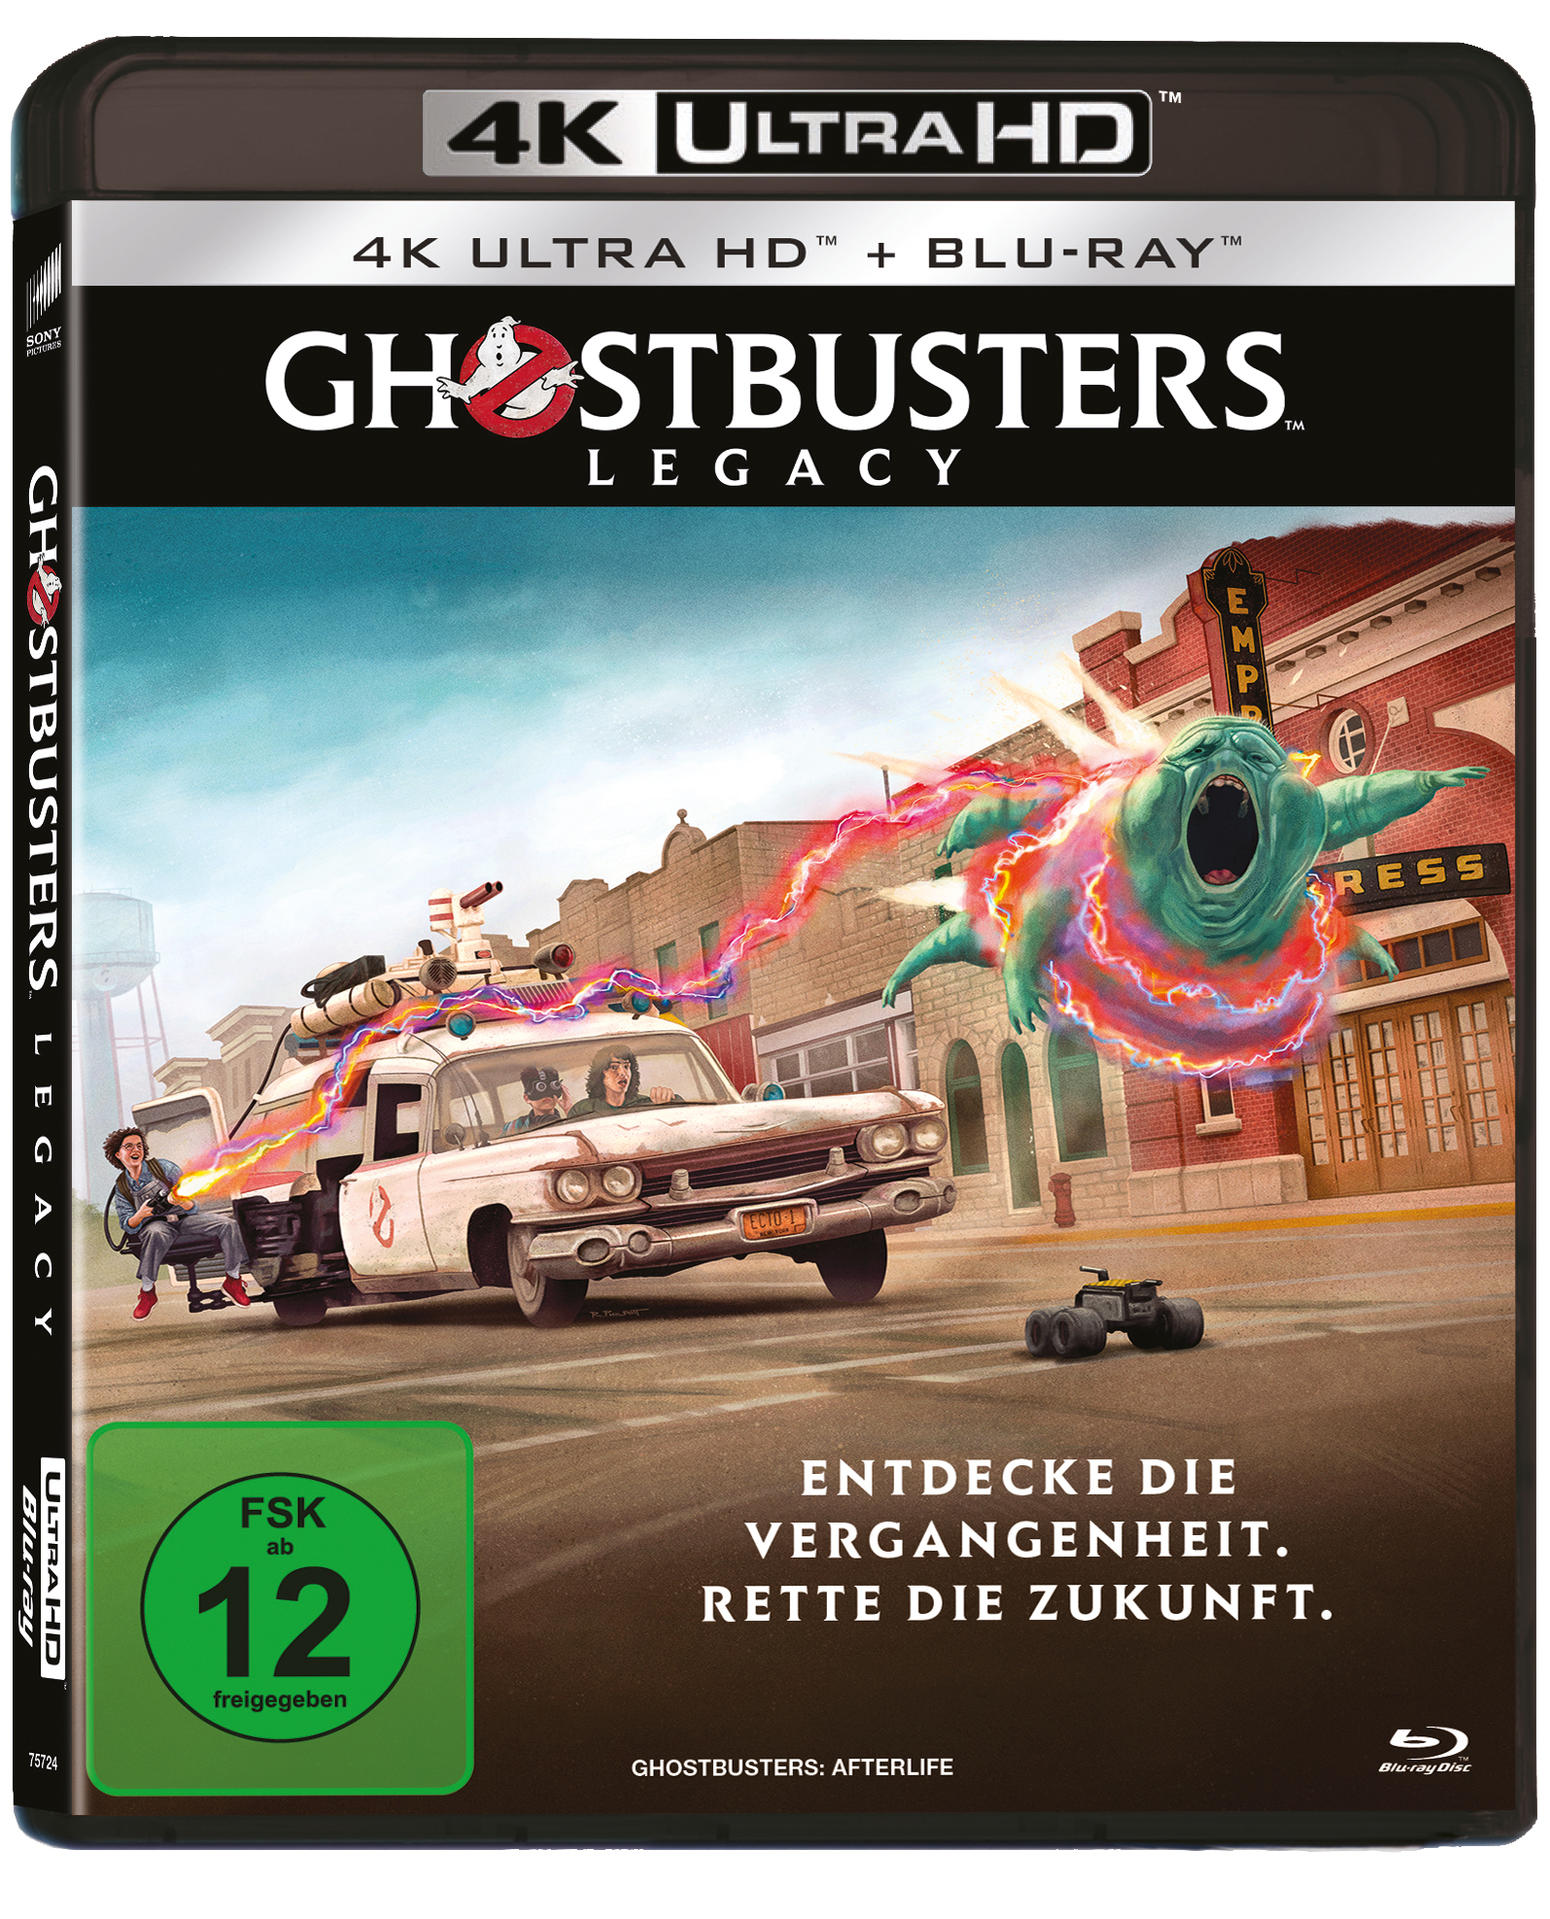 HD Legacy Blu-ray + Blu-ray Ultra 4K Ghostbusters: